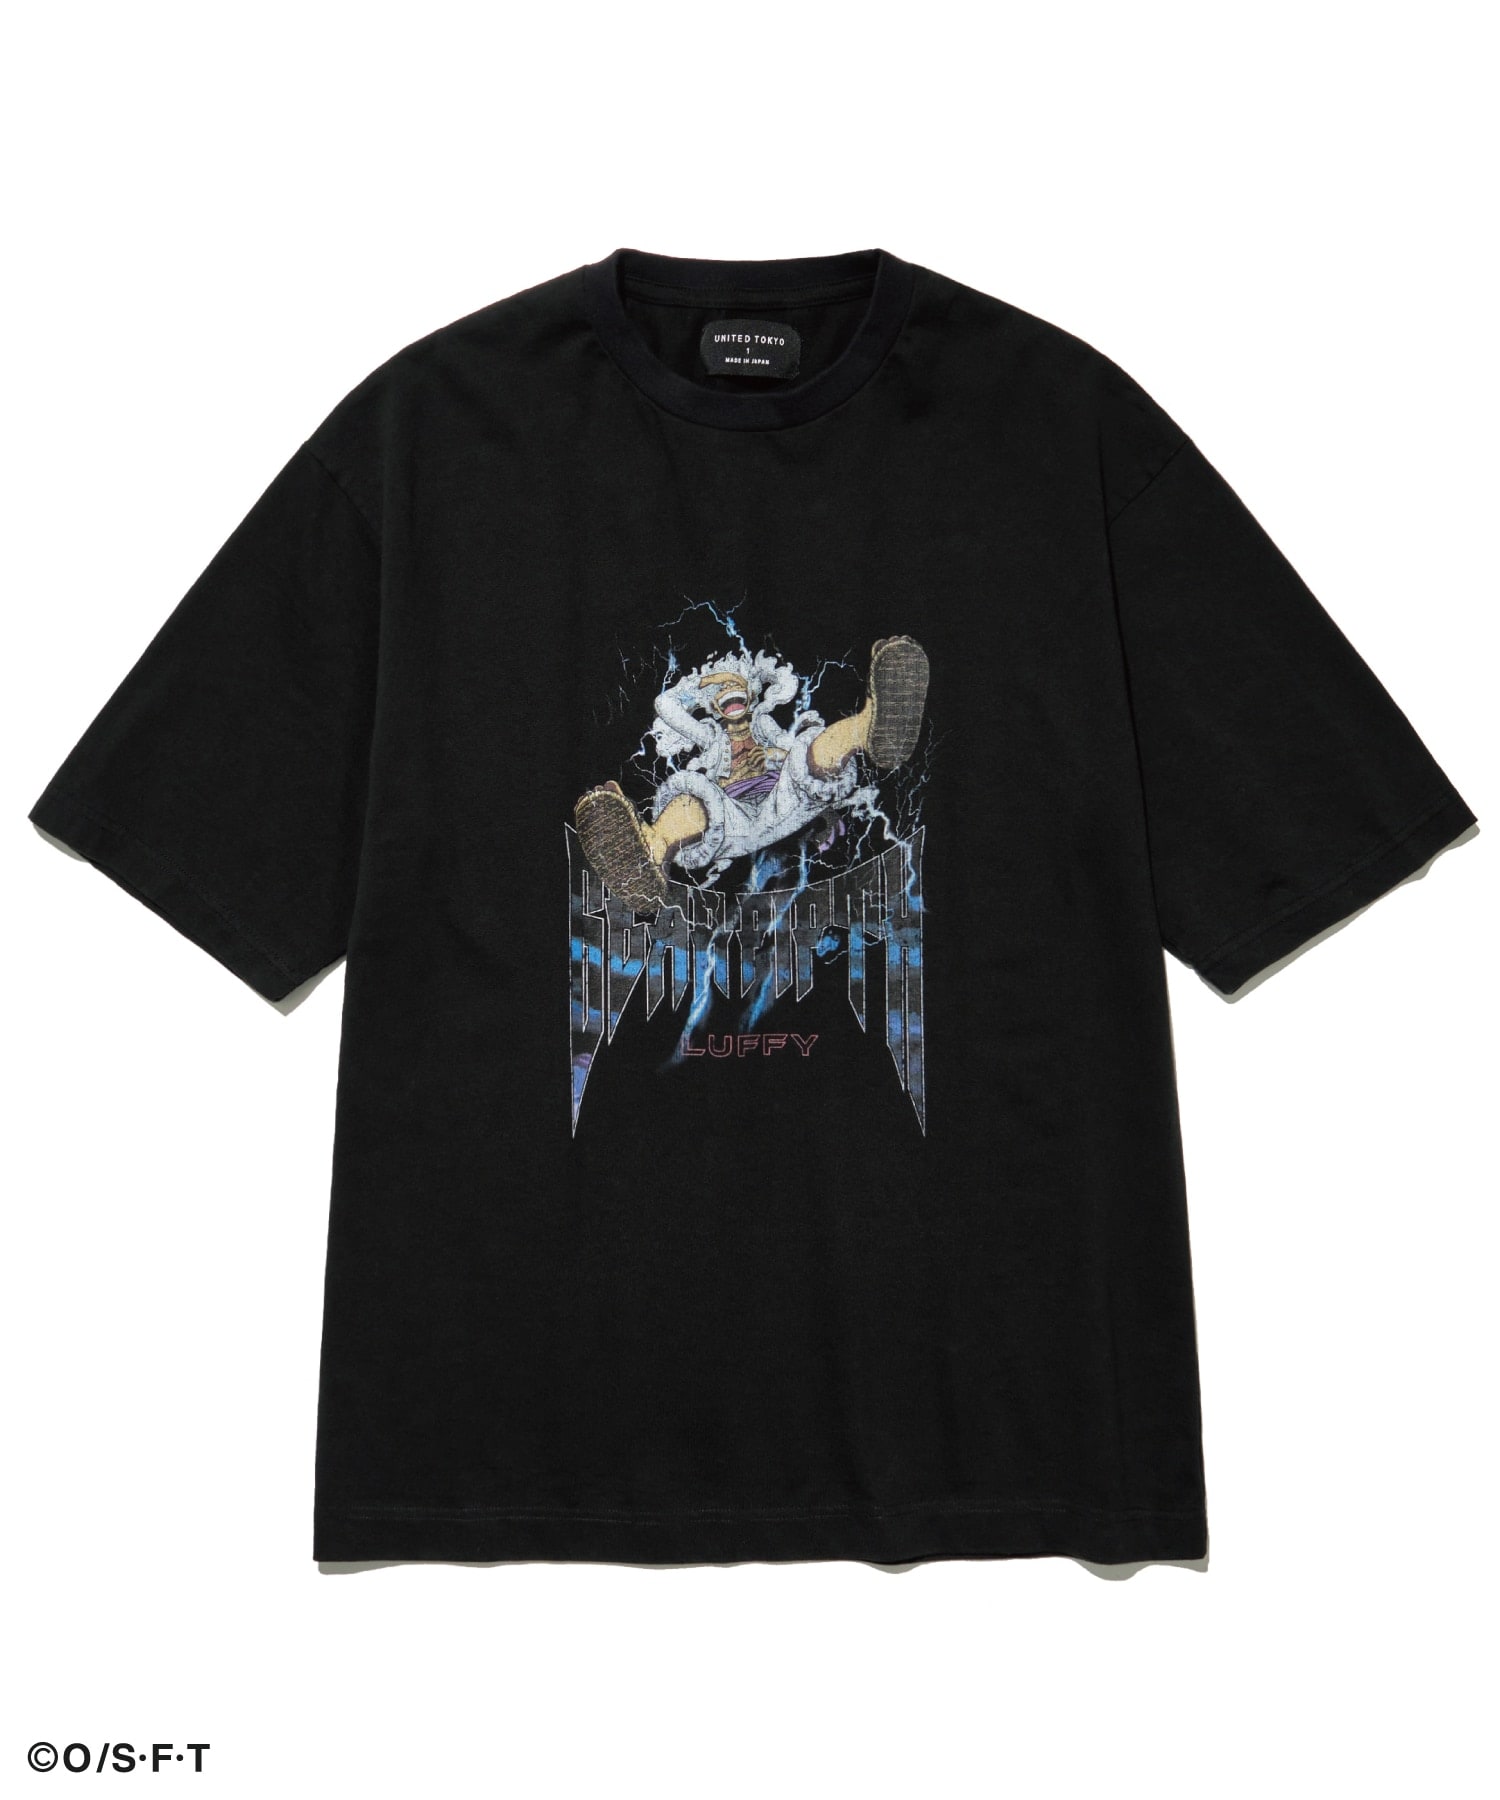 ワンピース ギア5 ルフィ×カイドウ バンドTシャツとのコラボレーションTシャツ